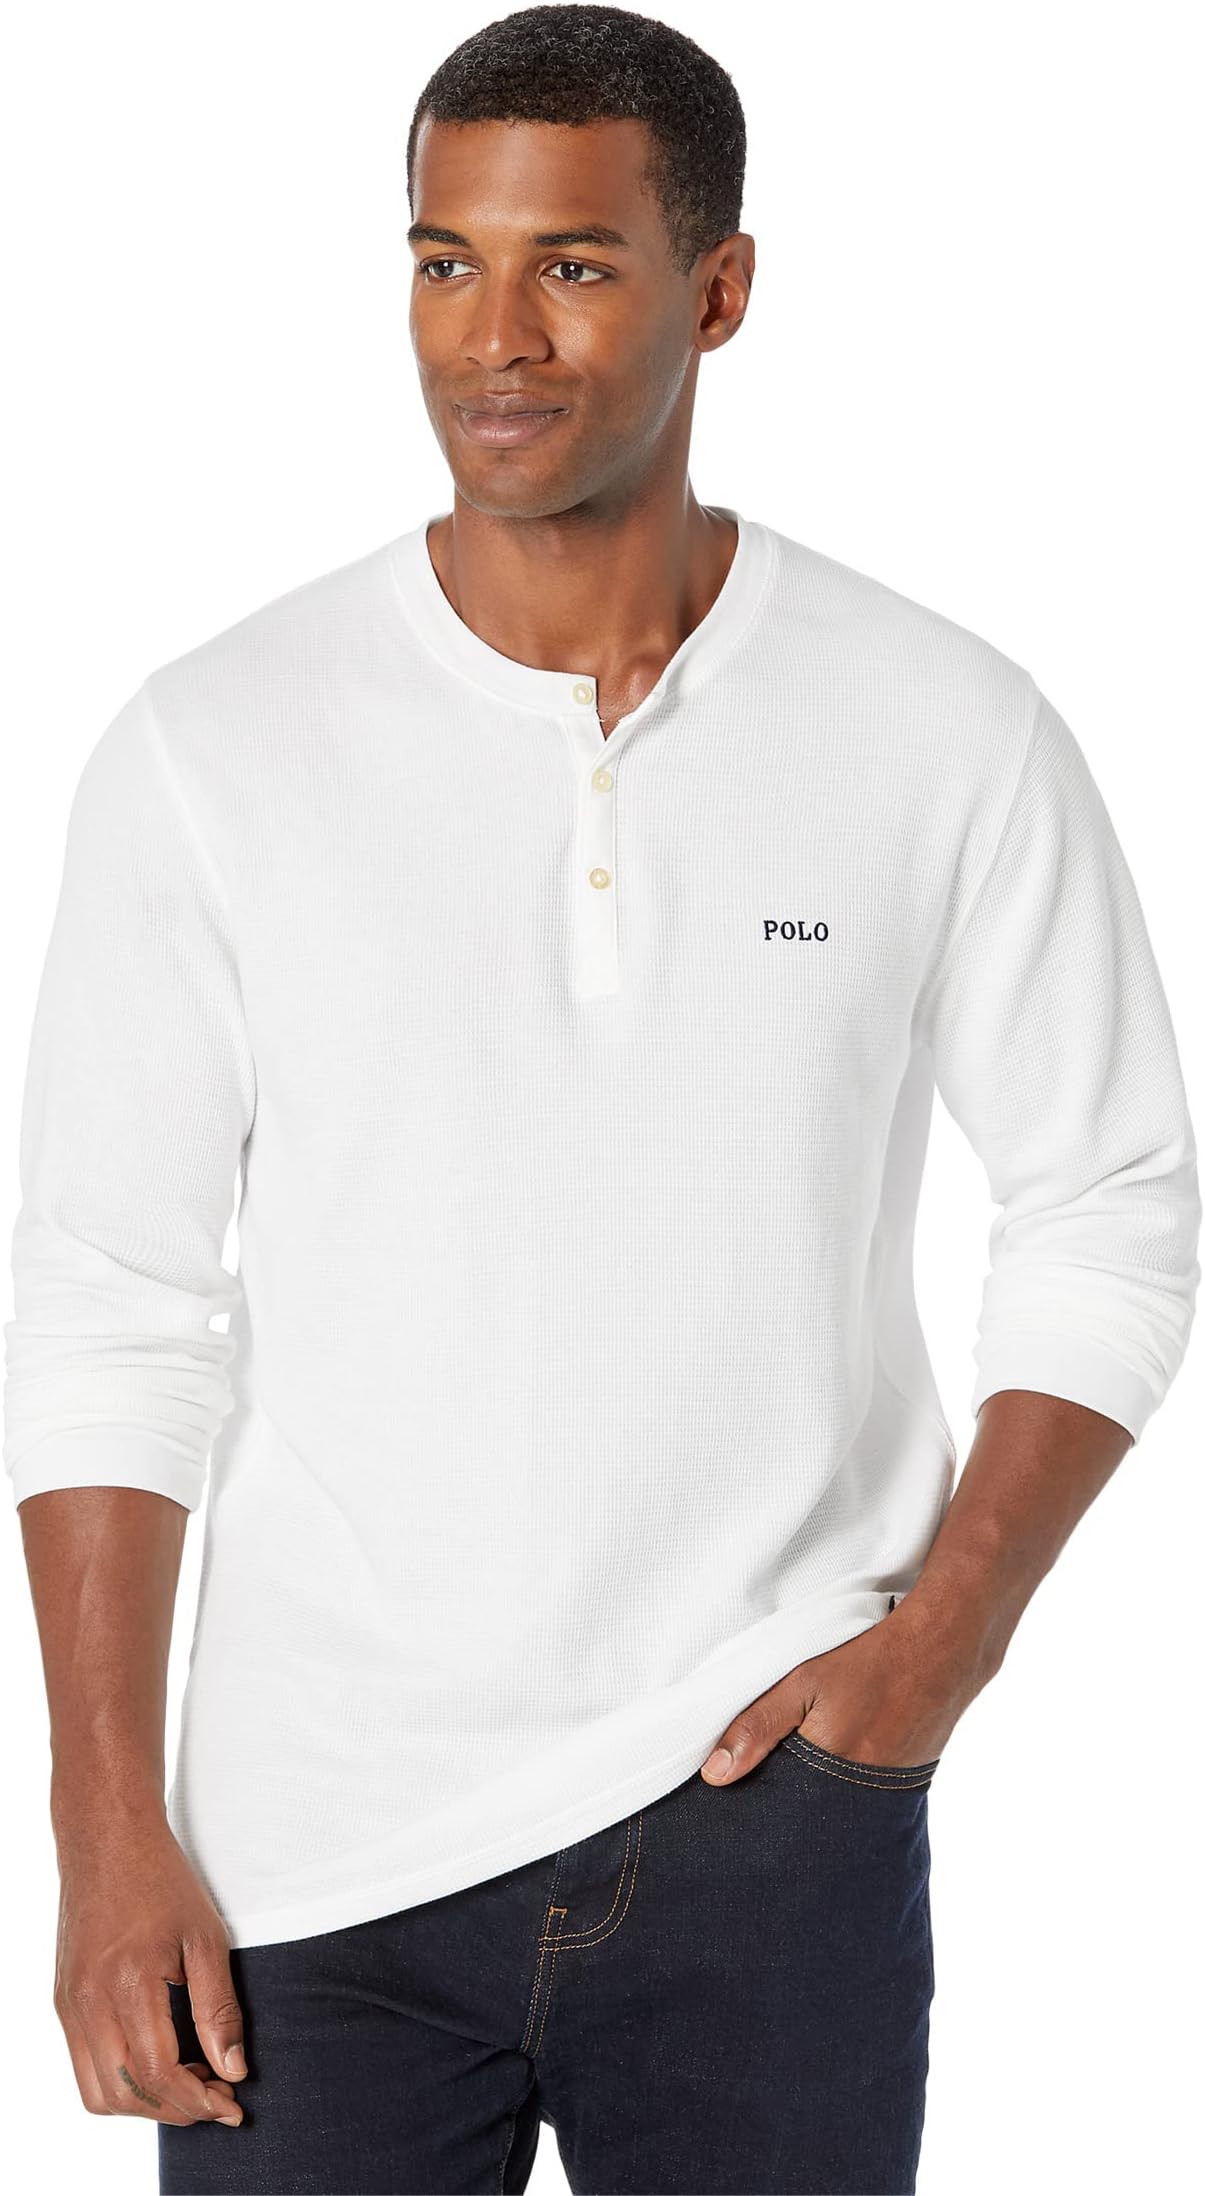 Вафельная футболка с длинным рукавом Polo Ralph Lauren, цвет White Cruise Navy Logo/PP футболка polo ralph lauren hanging logo short цвет cruise navy white gold bugle logo white pony player